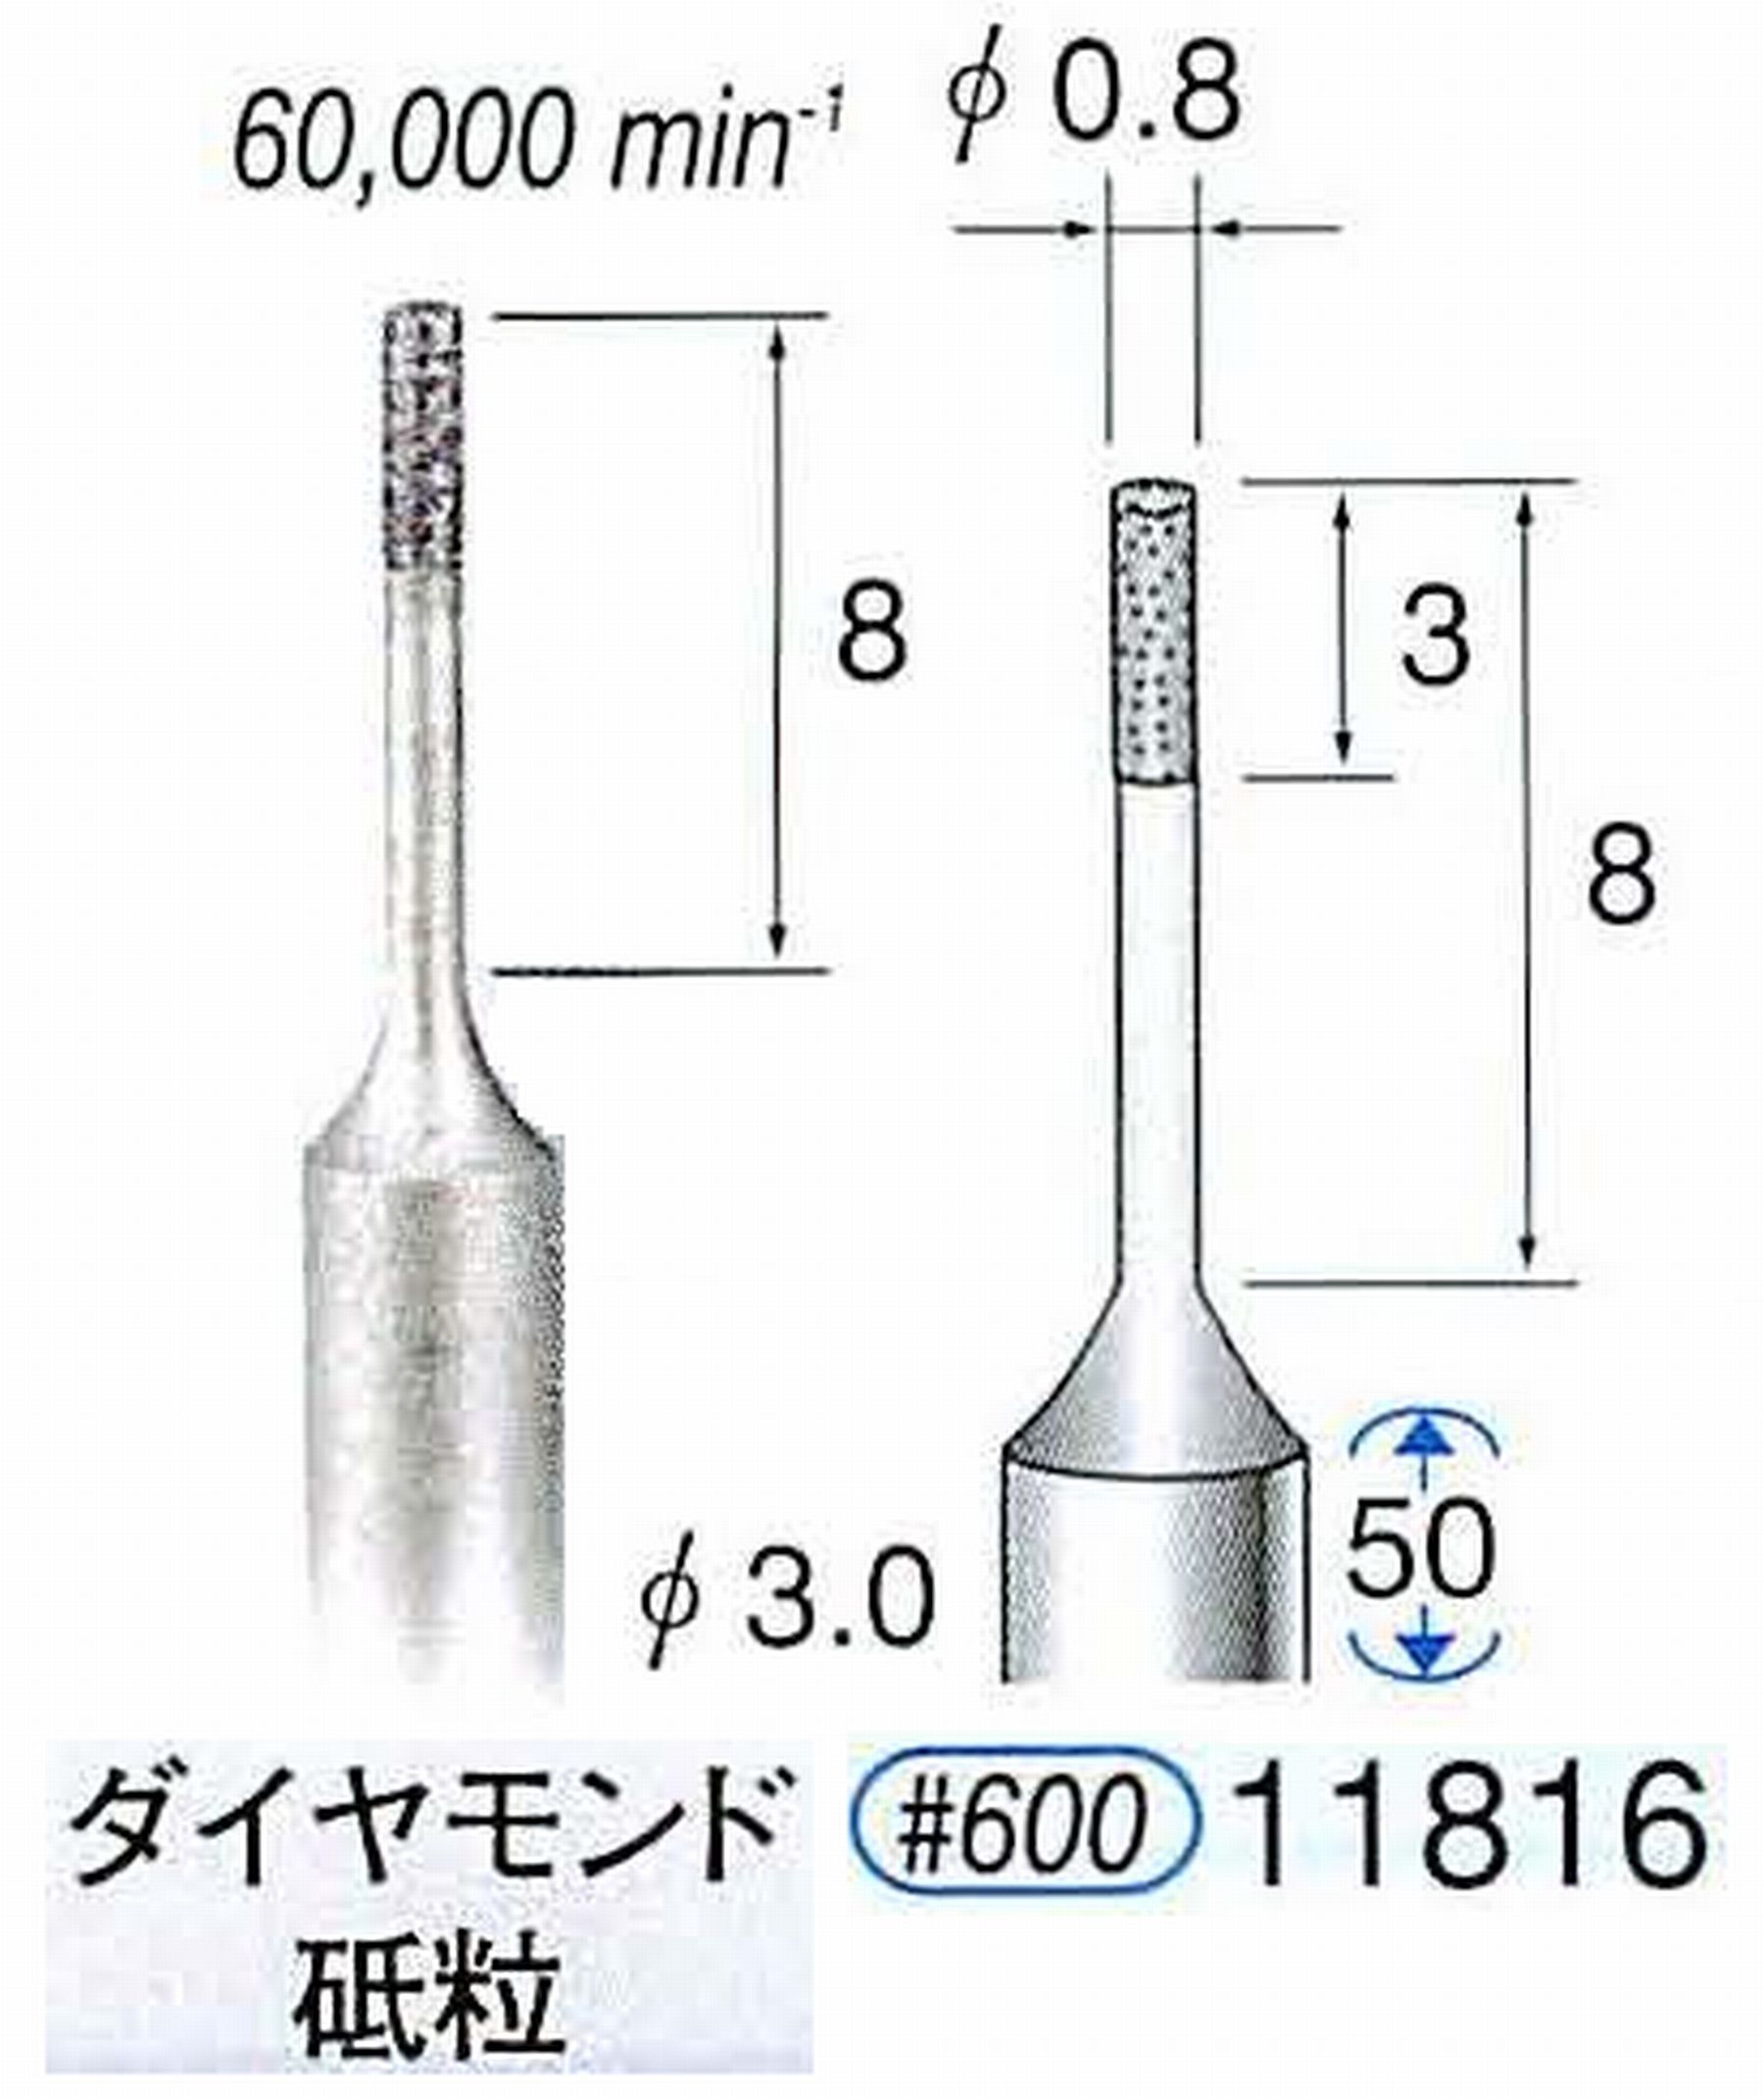 ナカニシ/NAKANISHI SP電着ダイヤモンド ダイヤモンド砥粒 軸径(シャンク)φ3.0mm 11816